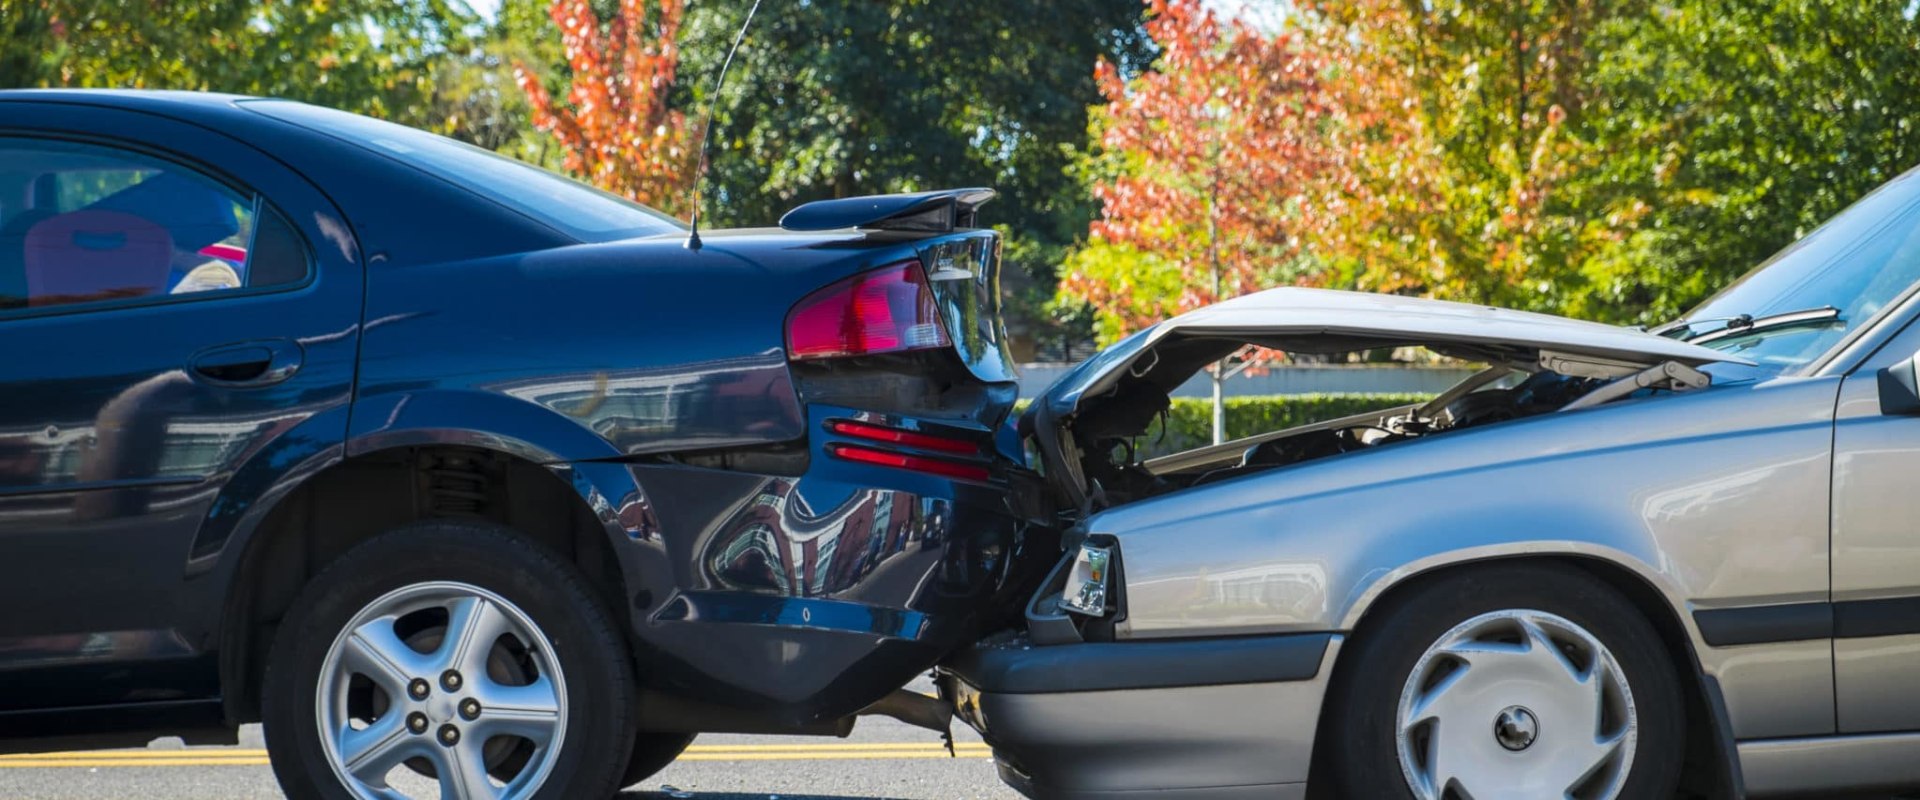 Can a pedestrian sue if hit by a car?